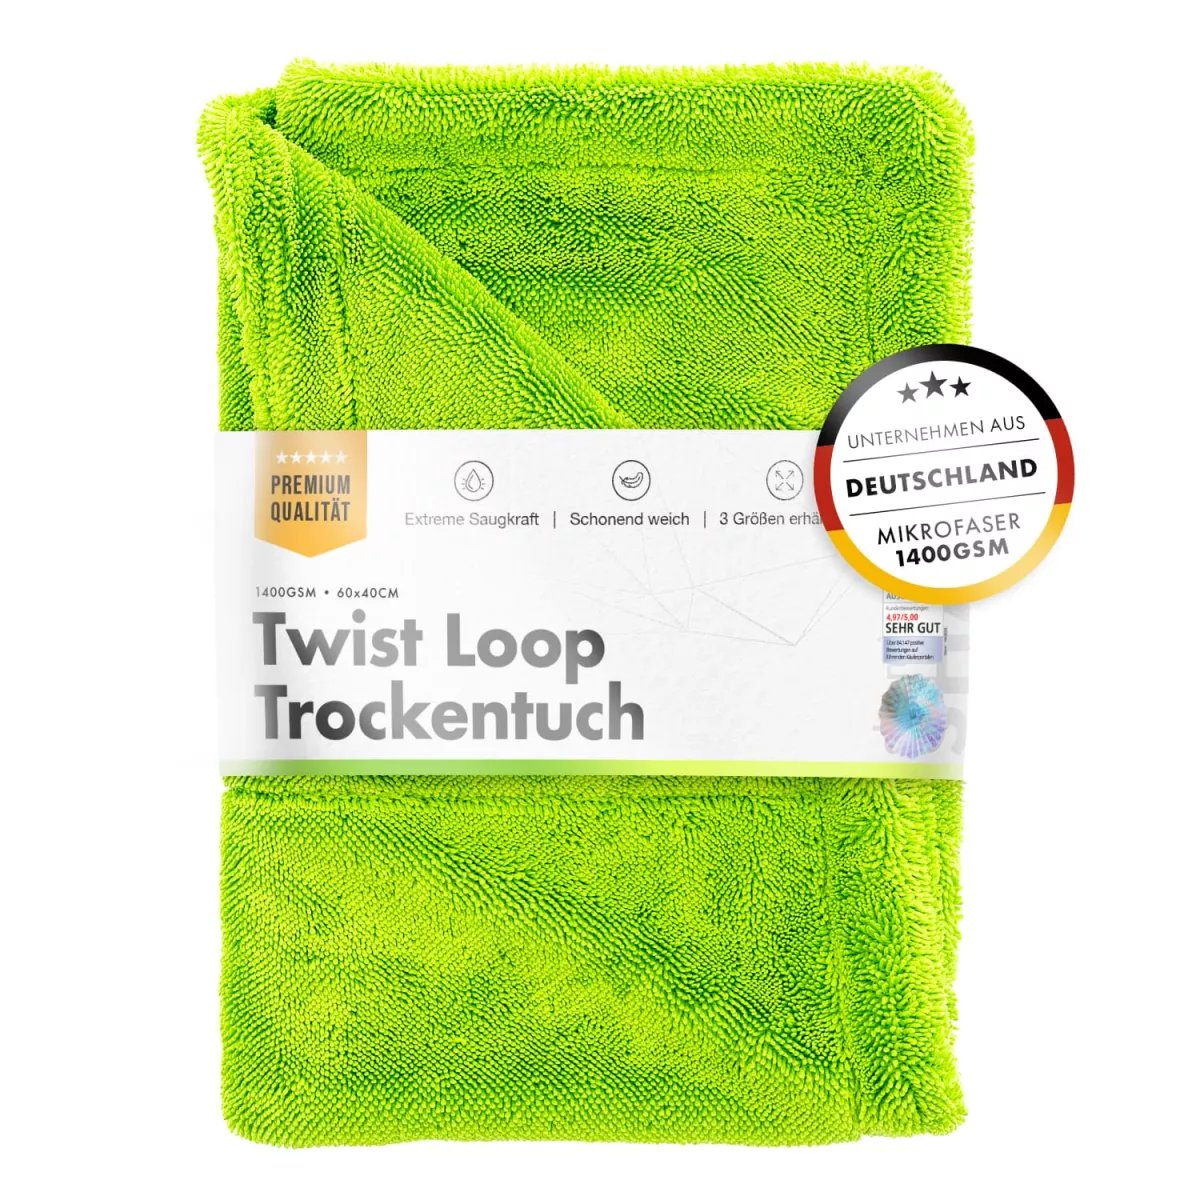 chemicalworkz Shark Twisted Loop Towel 1400GSM Grün Trockentuch 60x40cm